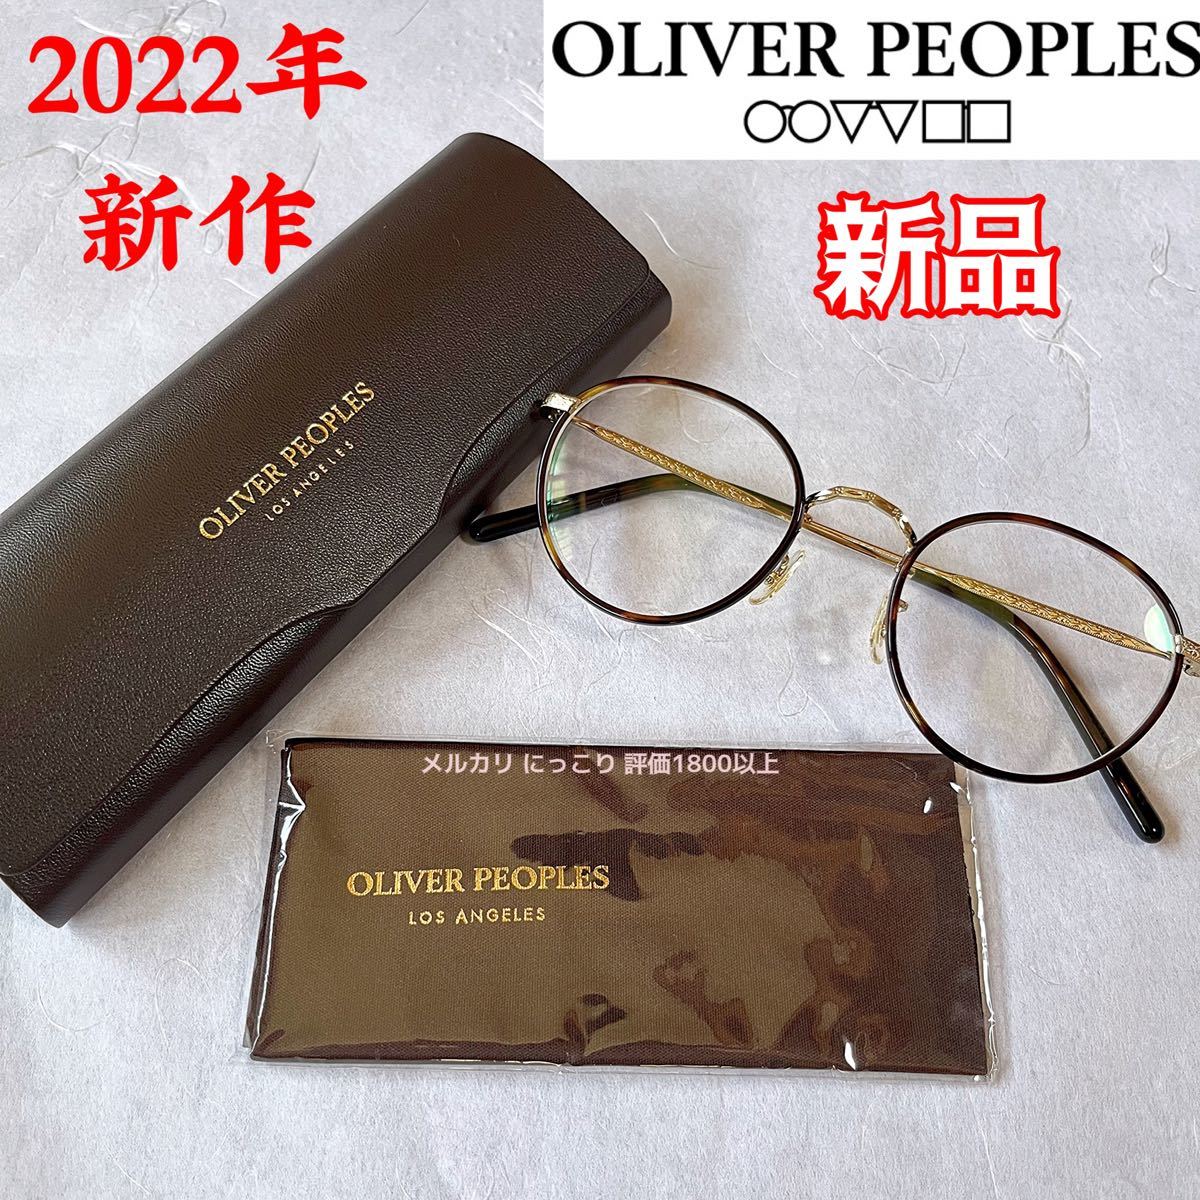 2022年モデル 新作/新品 OLIVER PEOPLES OV1308 ゴールド べっ甲 オリバーピープルズ